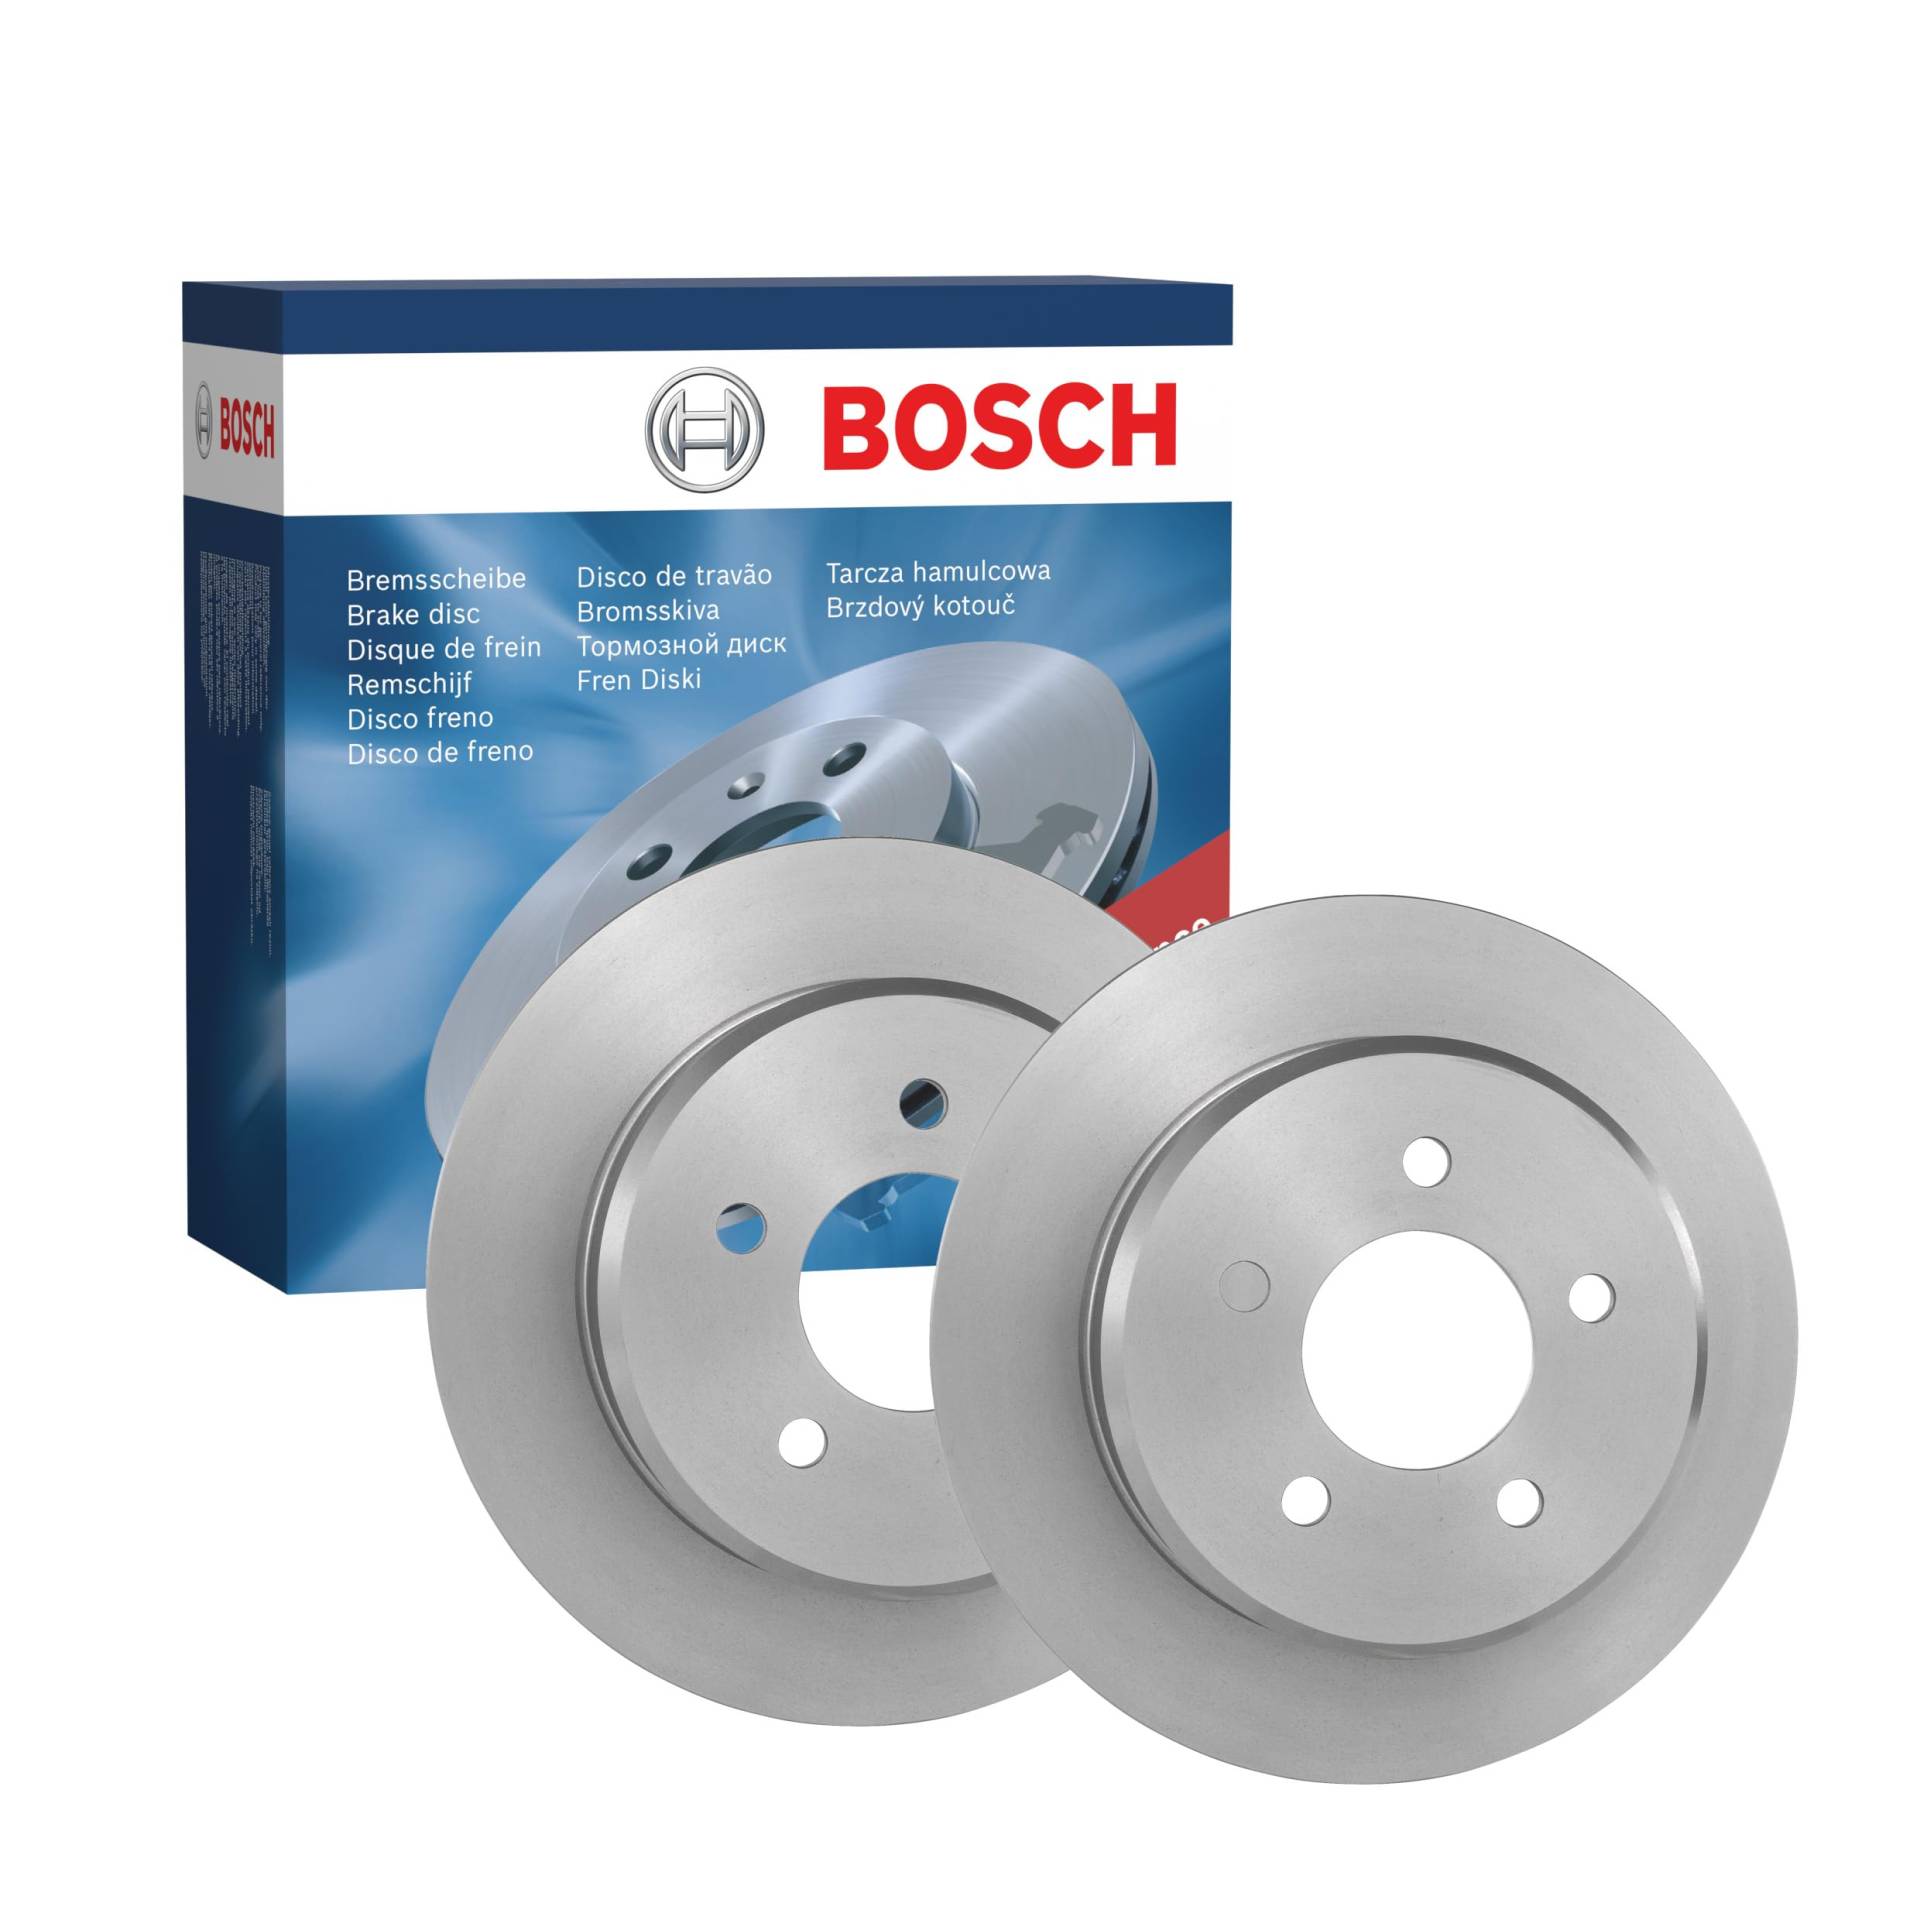 Bosch BD1032 Bremsscheiben - Hinterachse - ECE-R90 Zertifizierung - zwei Bremsscheiben pro Set von Bosch Automotive